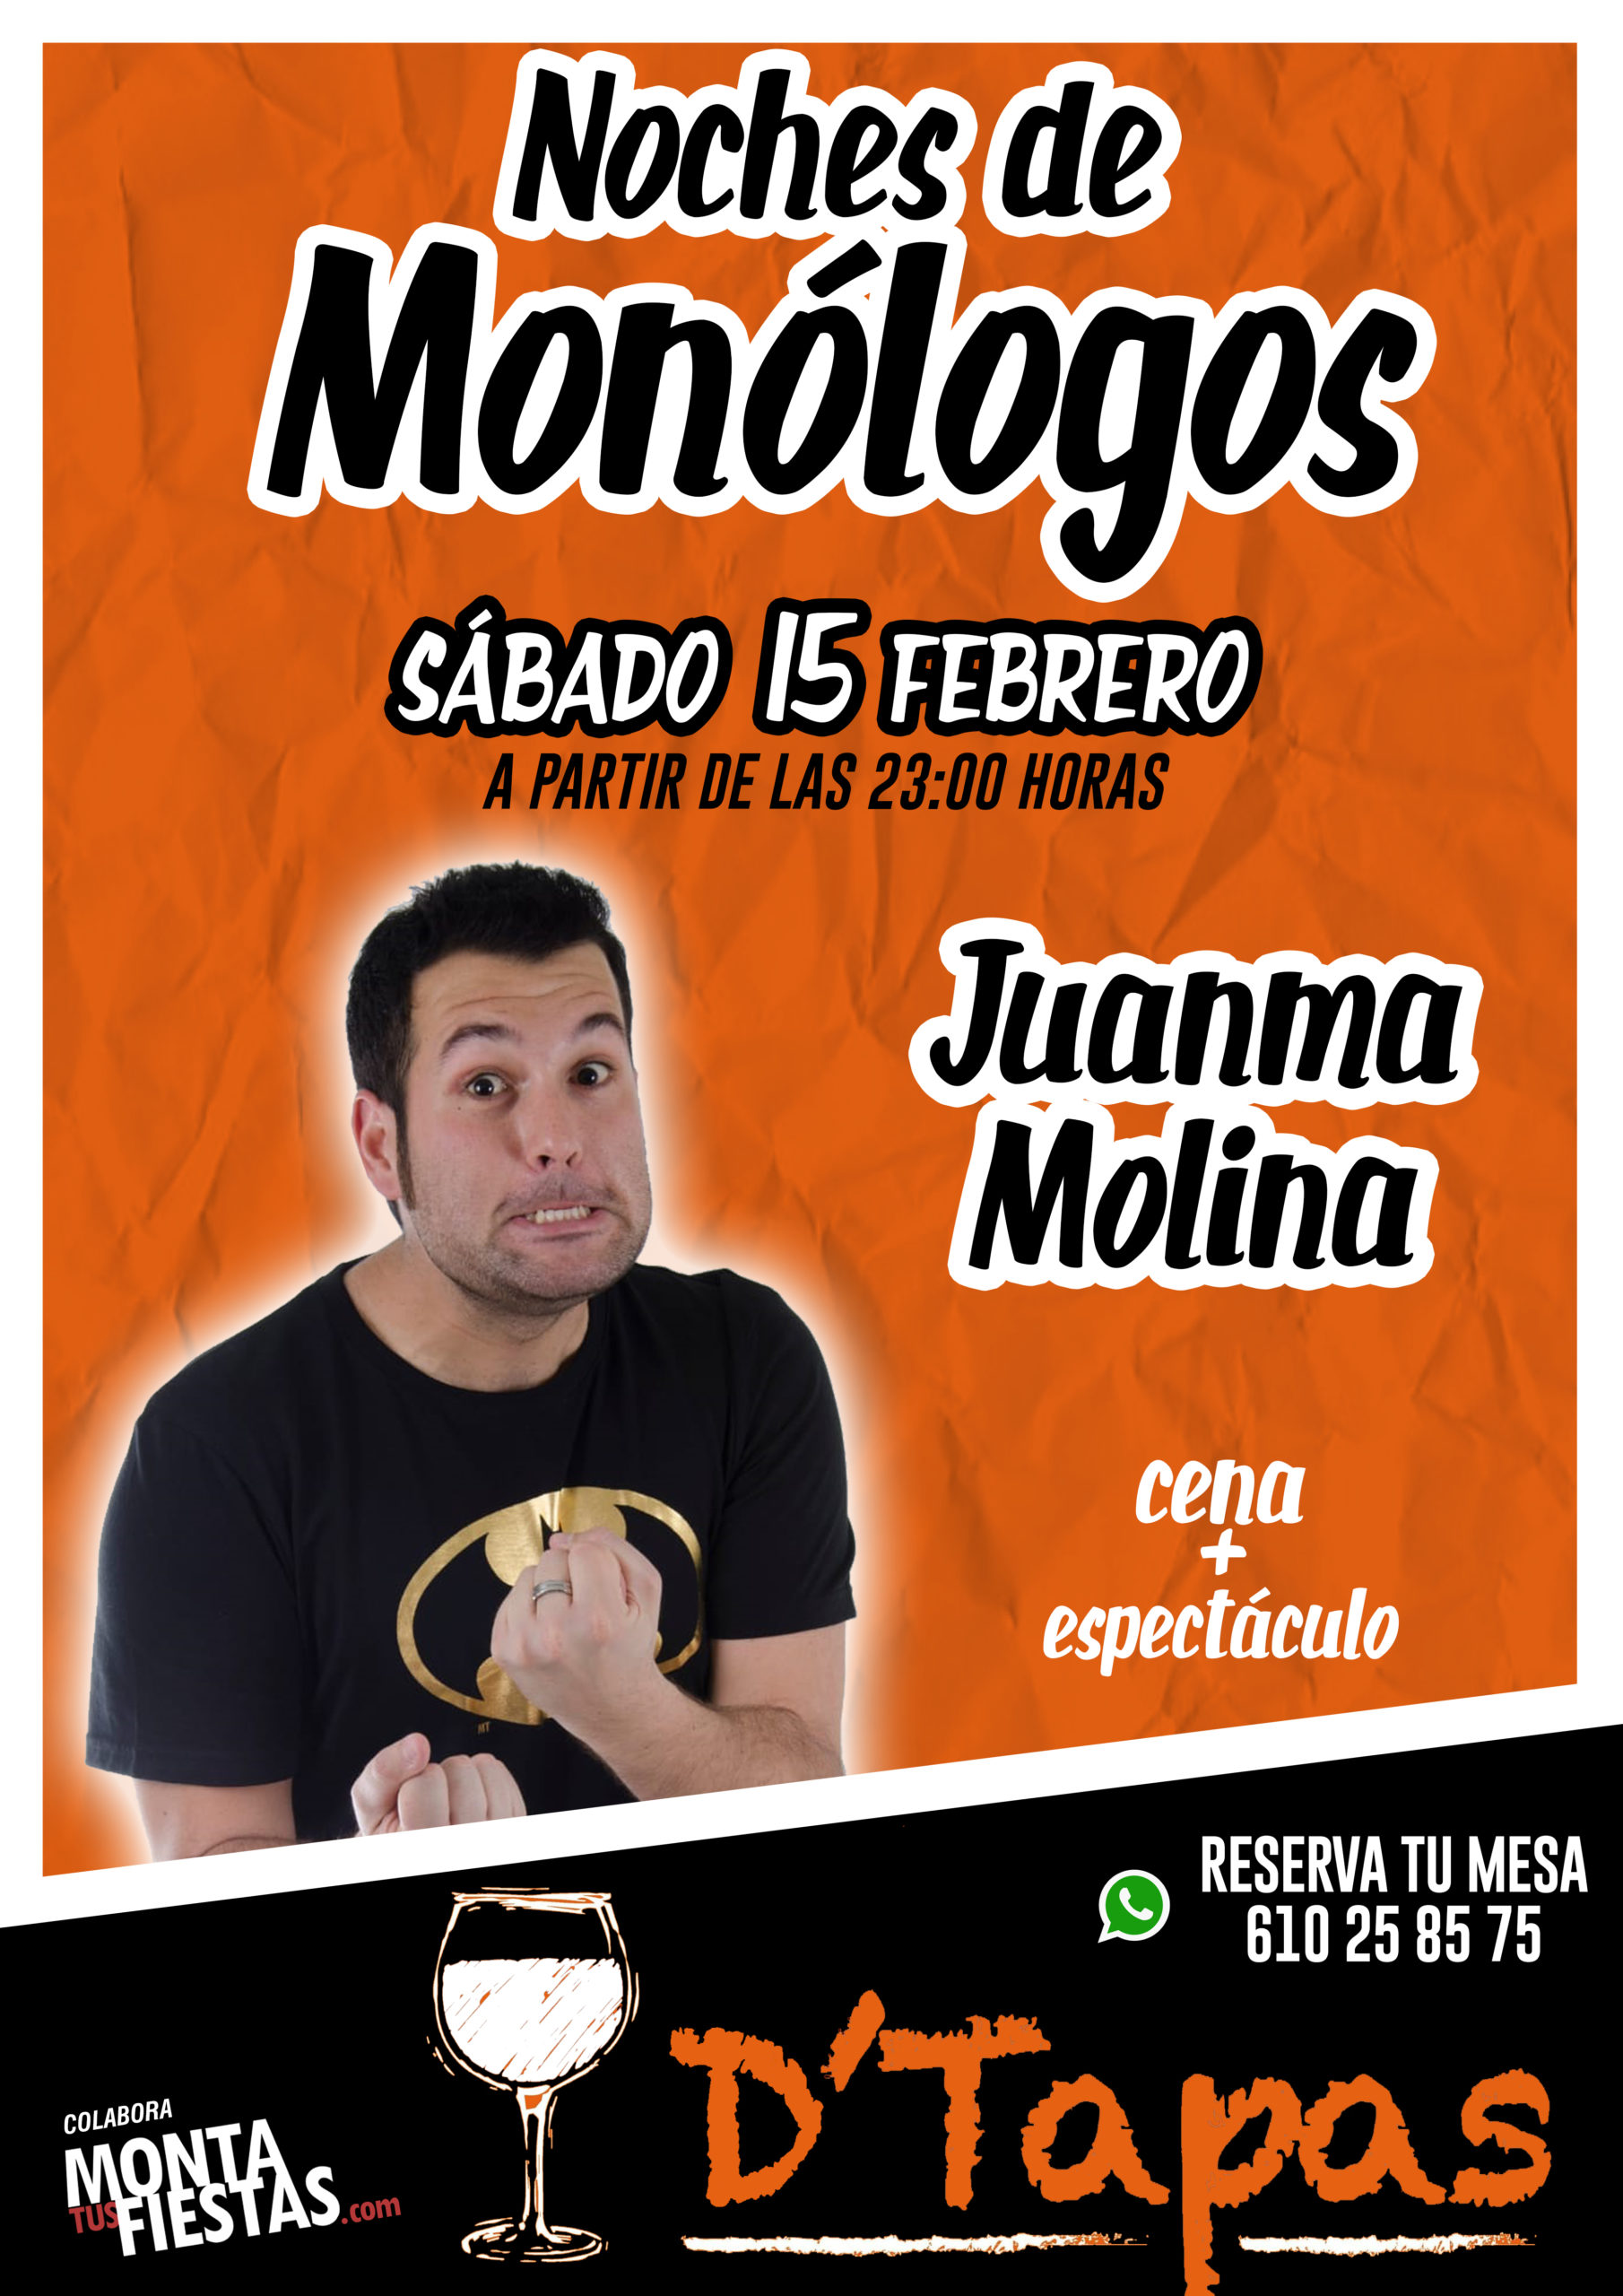 Monólogo con Juanma Molina en D´tapas